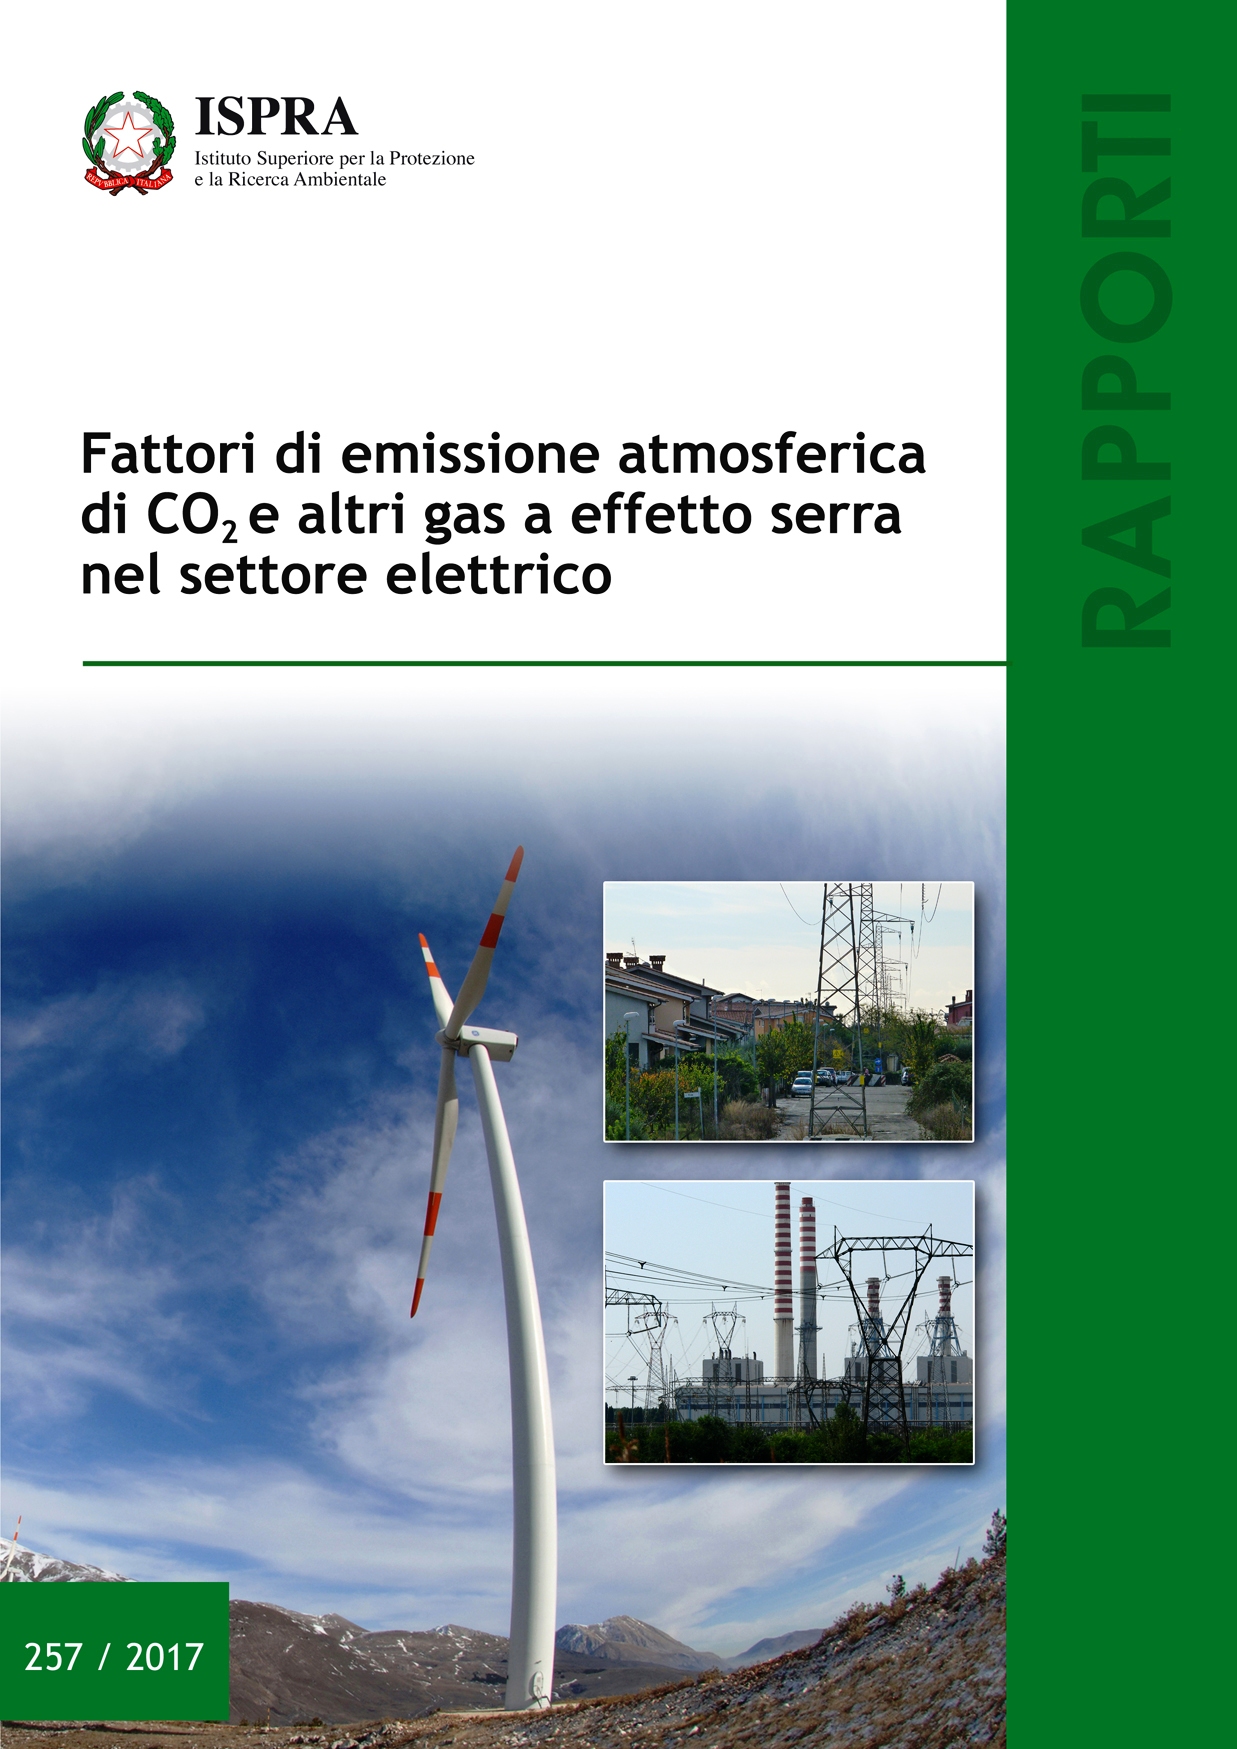 ISPRA elaborati i fattori di emissione atmosferica di anidride carbonica e altri gas a effetto serra per la generazione e i consumi di energia elettrica